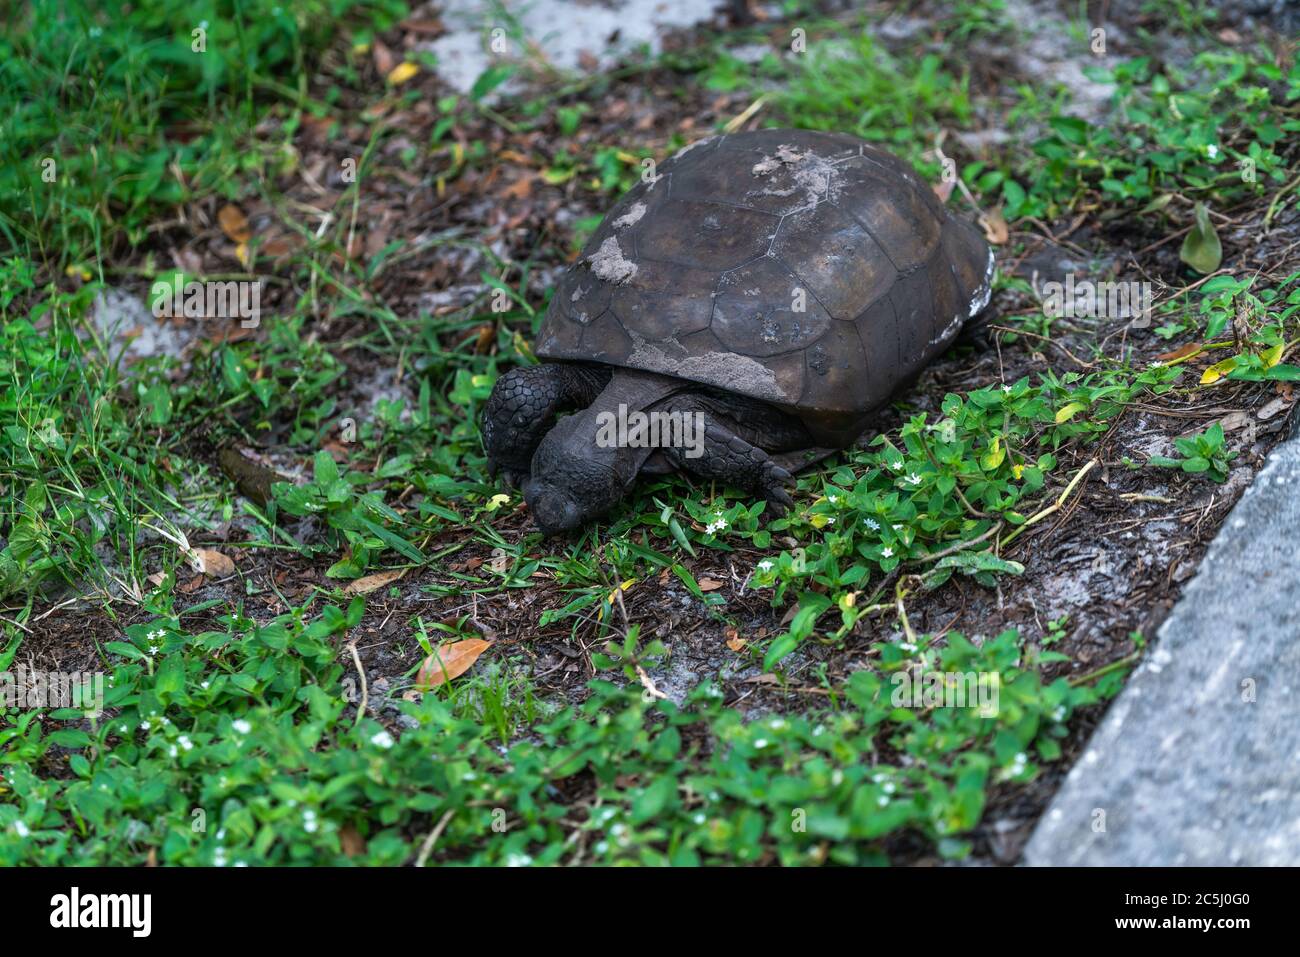 Une tortue mangeant l'herbe près de la rivière dans le parc. Banque D'Images